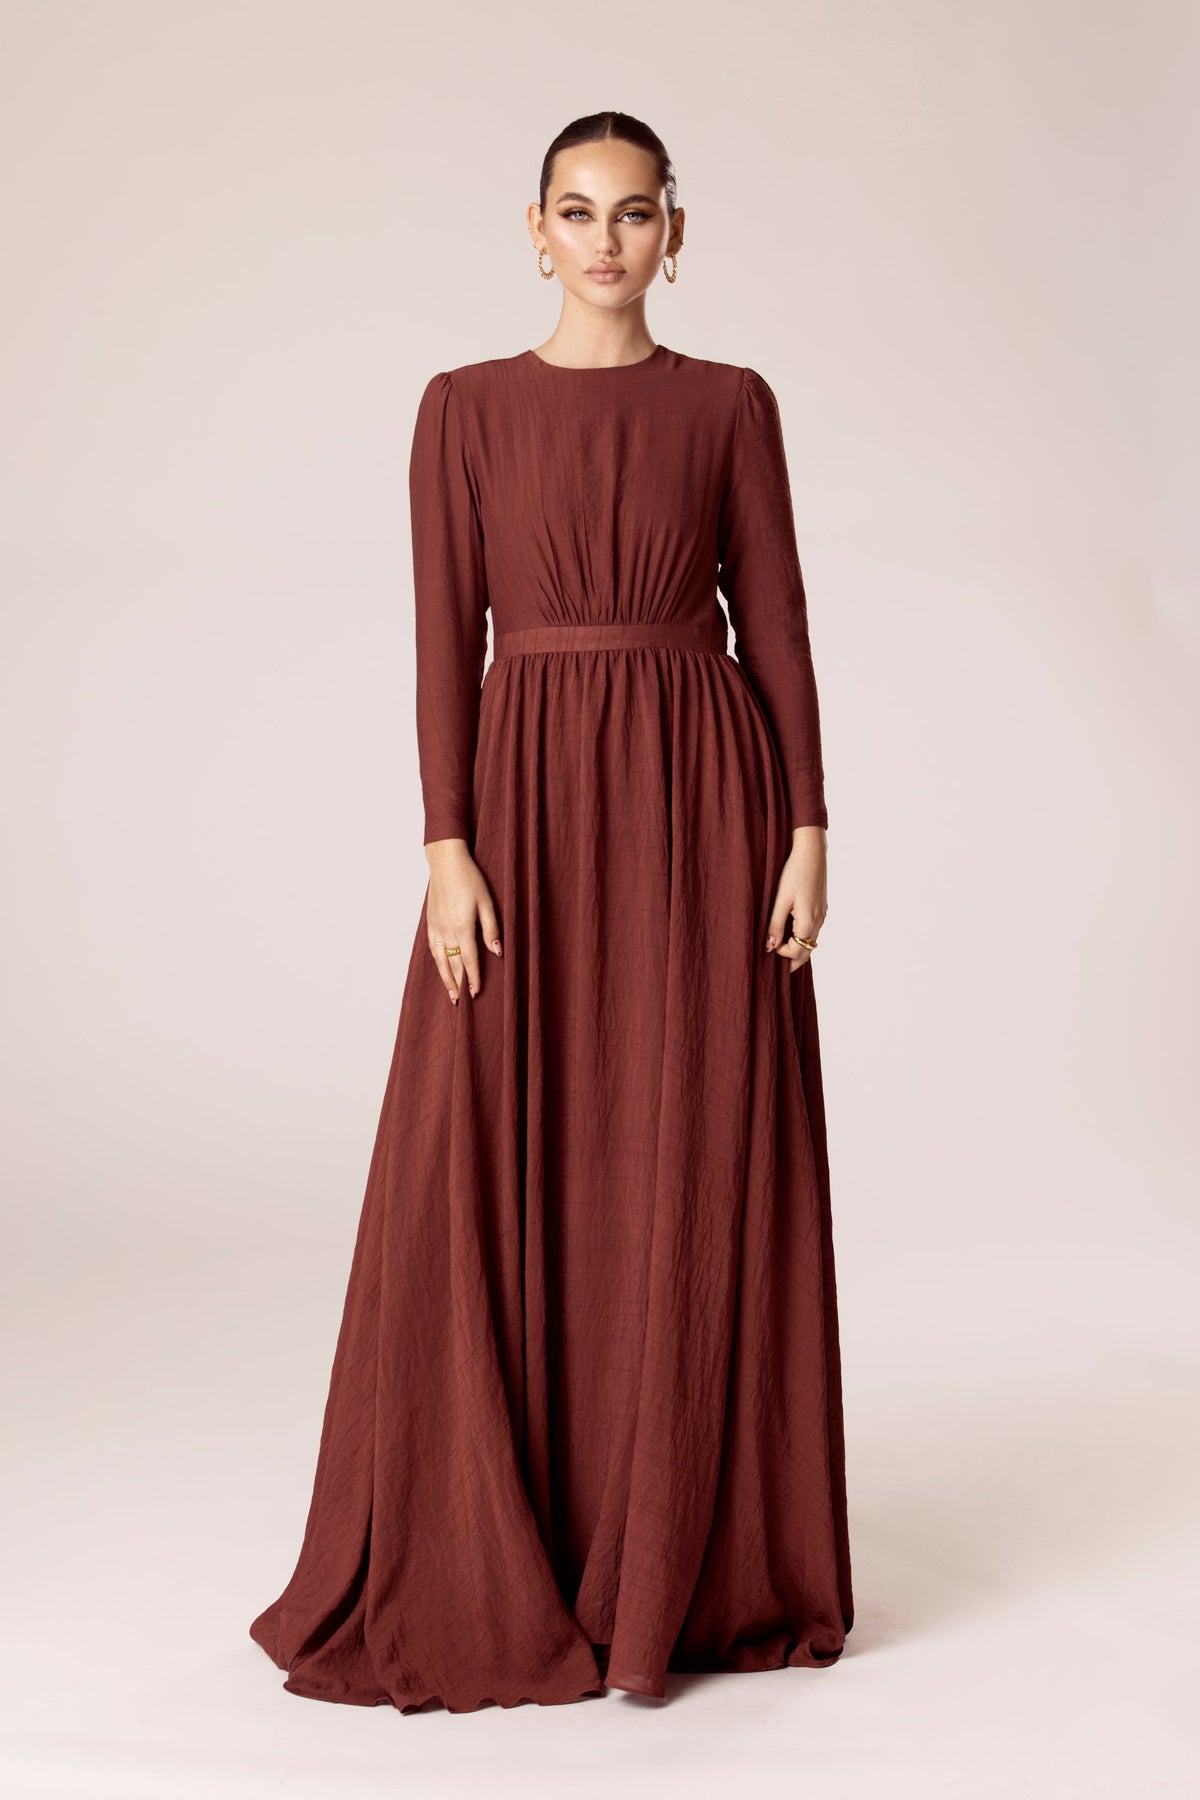 Lana Textured A Line Maxi Dress - Pecan Veiled Collection 